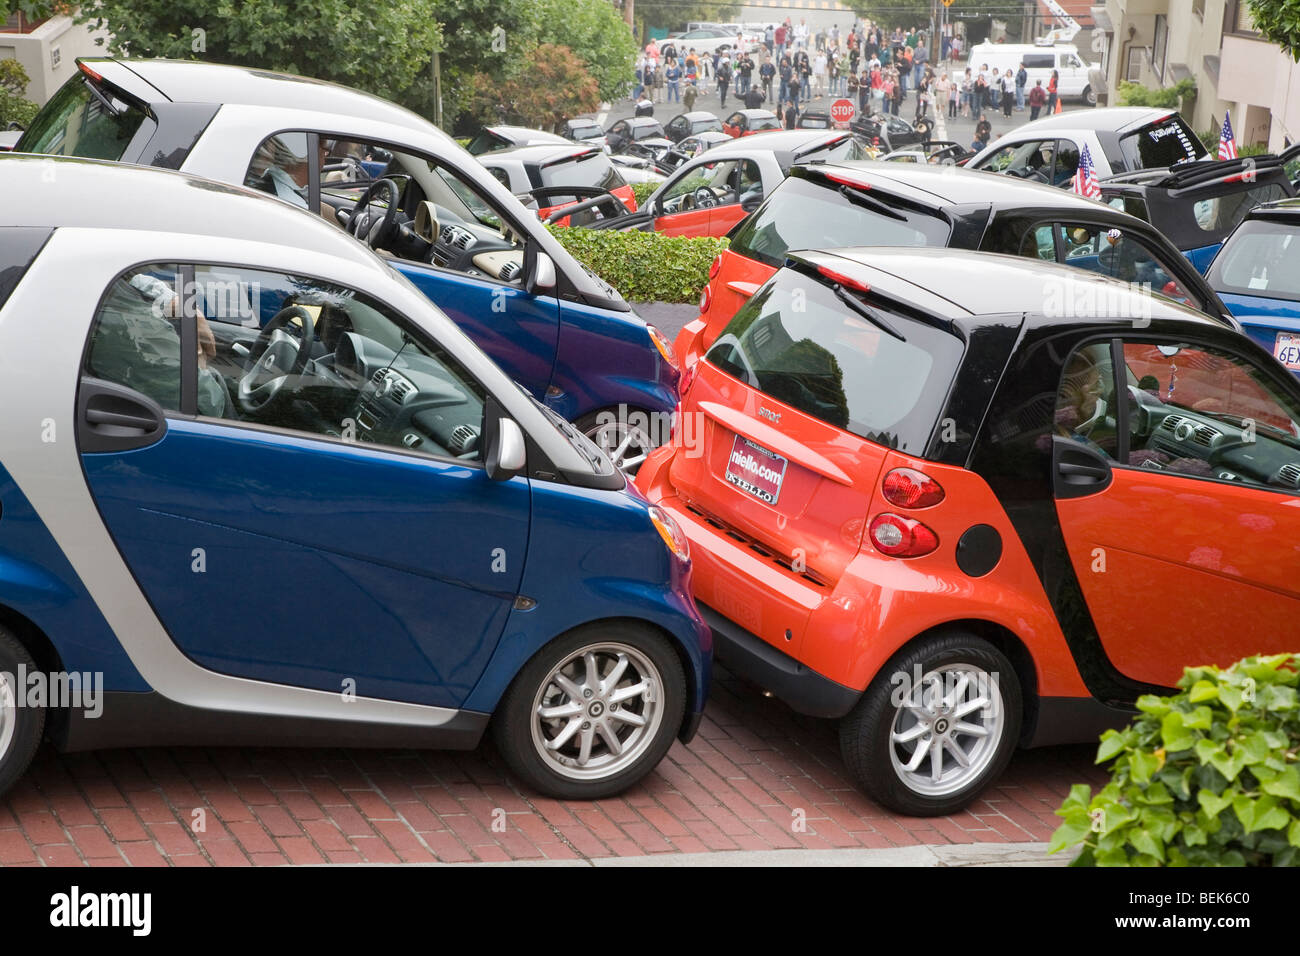 Smart Auto-Enthusiasten verpackt ca. 130 ihren Kleinwagen in Lombard Street für Foto-Shooting während der Rallye Club. Stockfoto